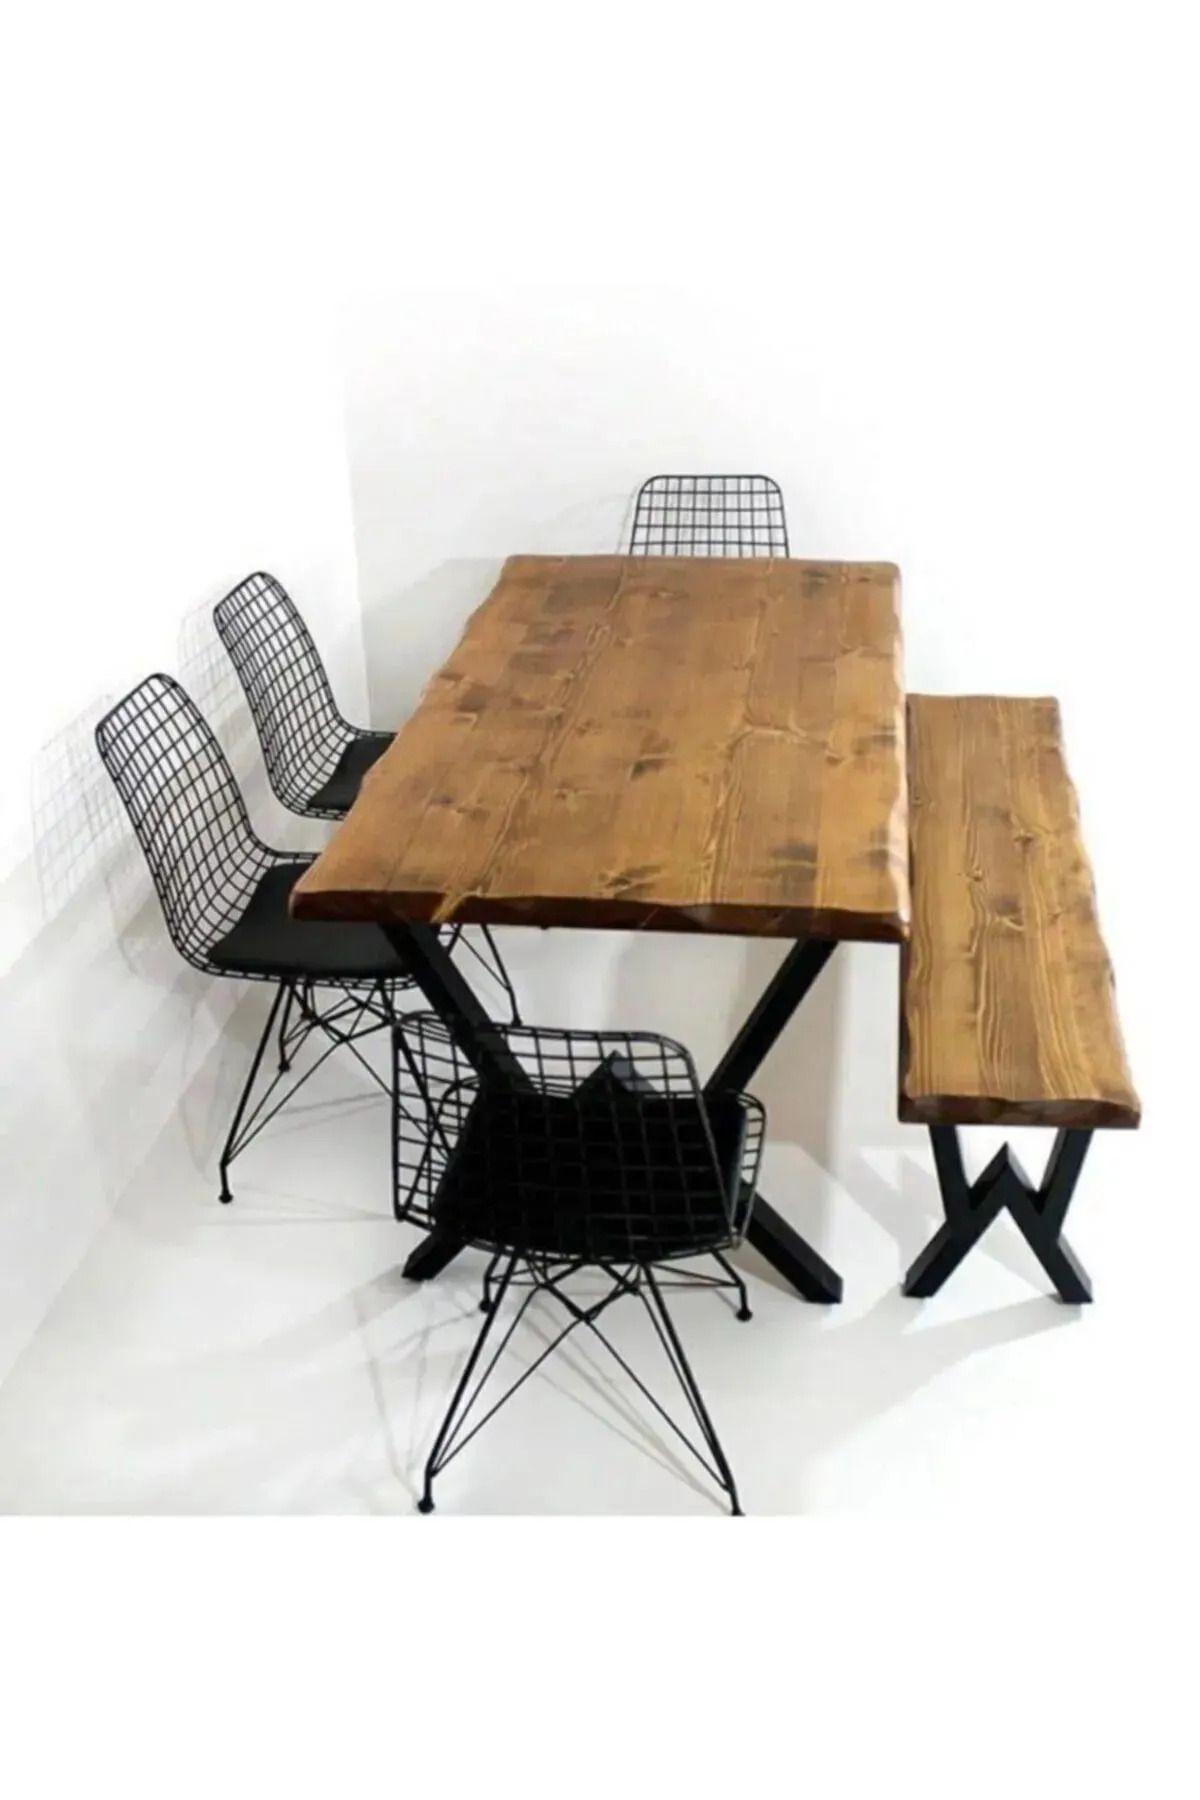 HFAY DESİGN Masif Yemek Masası Banklı Sandalyeler Hariç 80x130